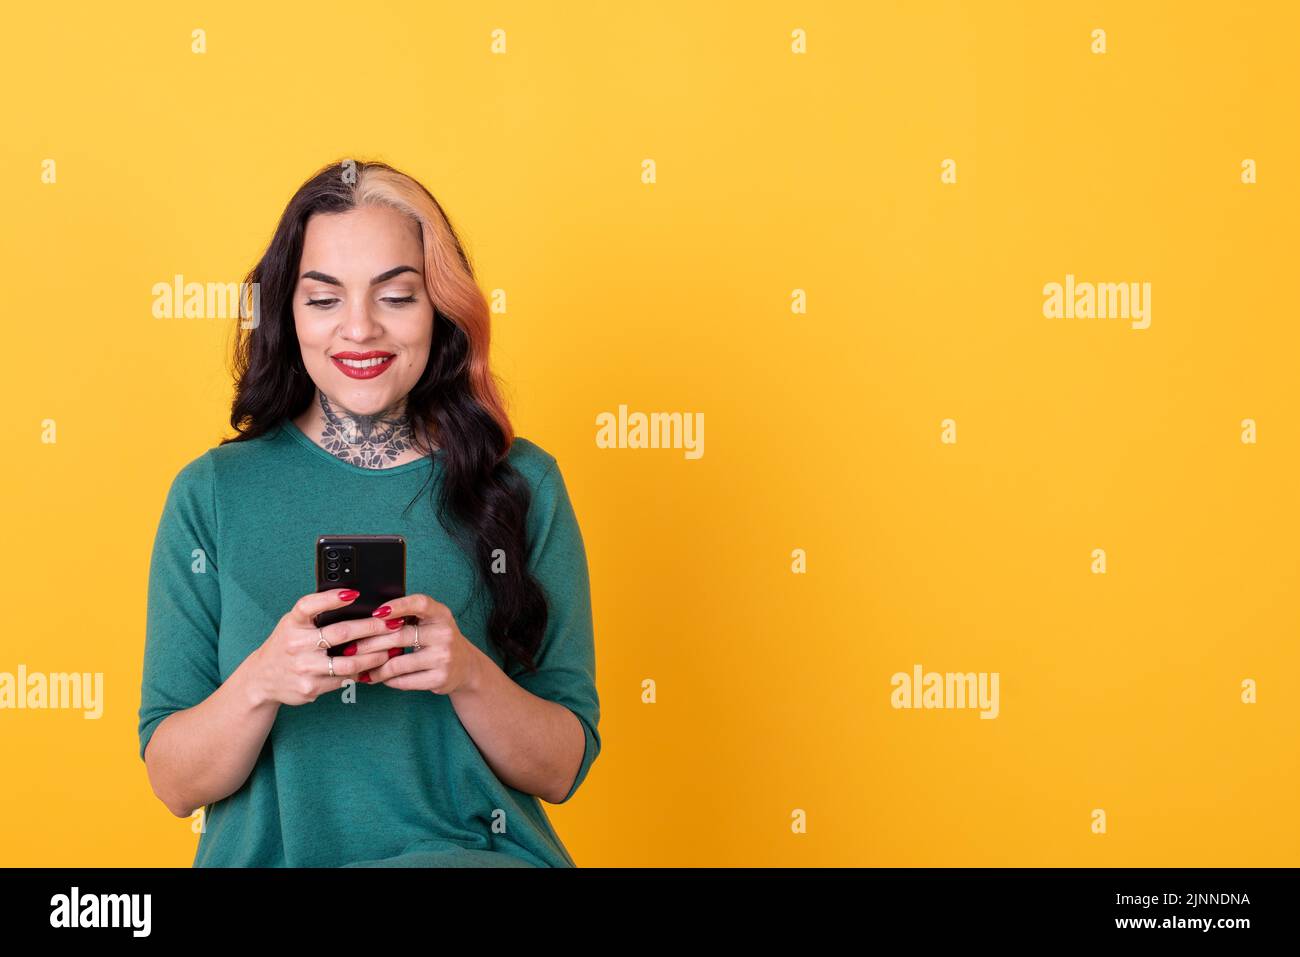 Ritratto di una donna attraente utilizzando smartphone su sfondo giallo. Spazio di copia Foto Stock